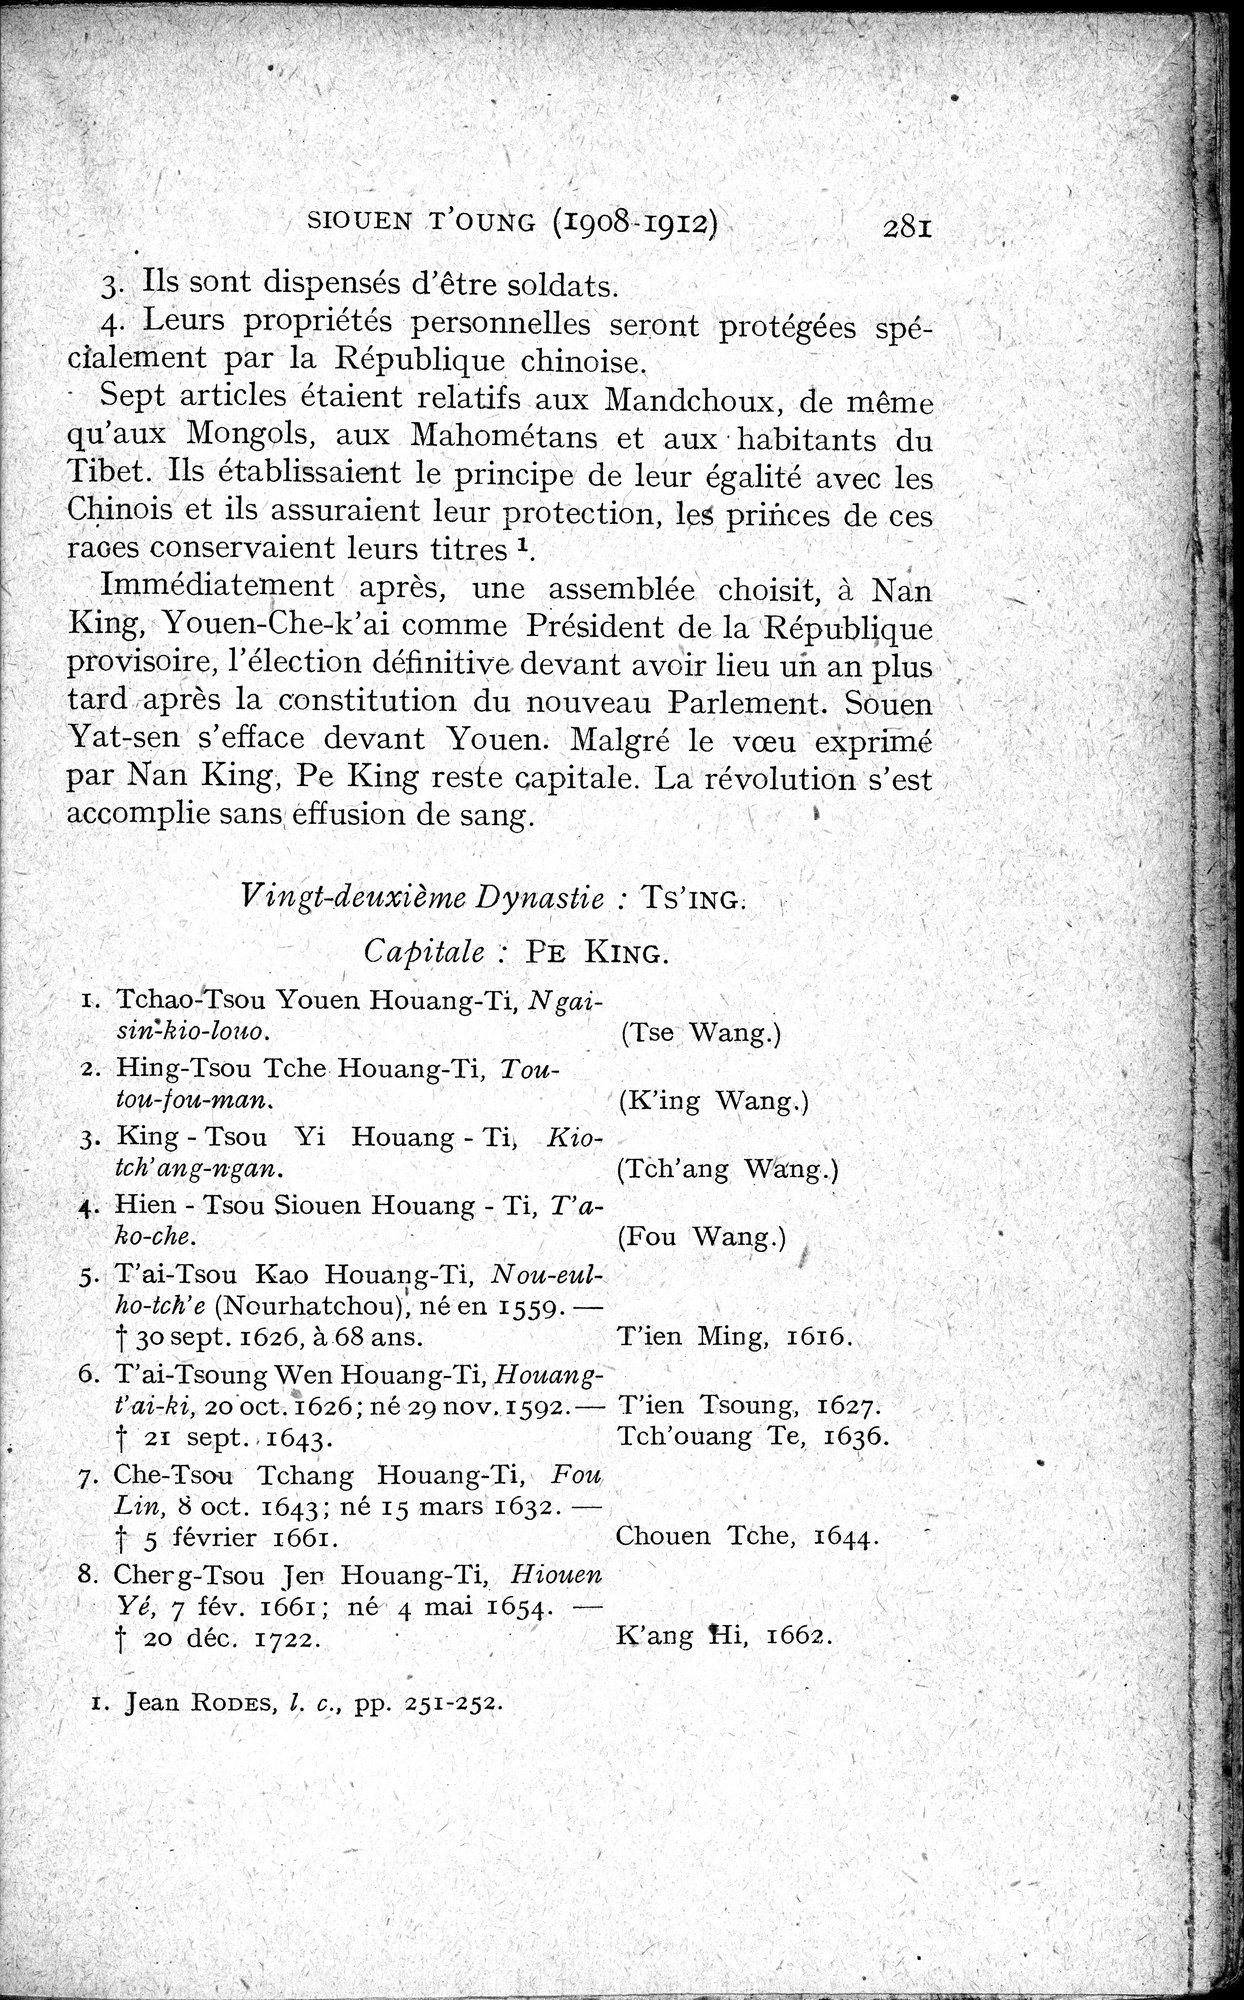 Histoire Générale de la Chine : vol.4 / Page 283 (Grayscale High Resolution Image)